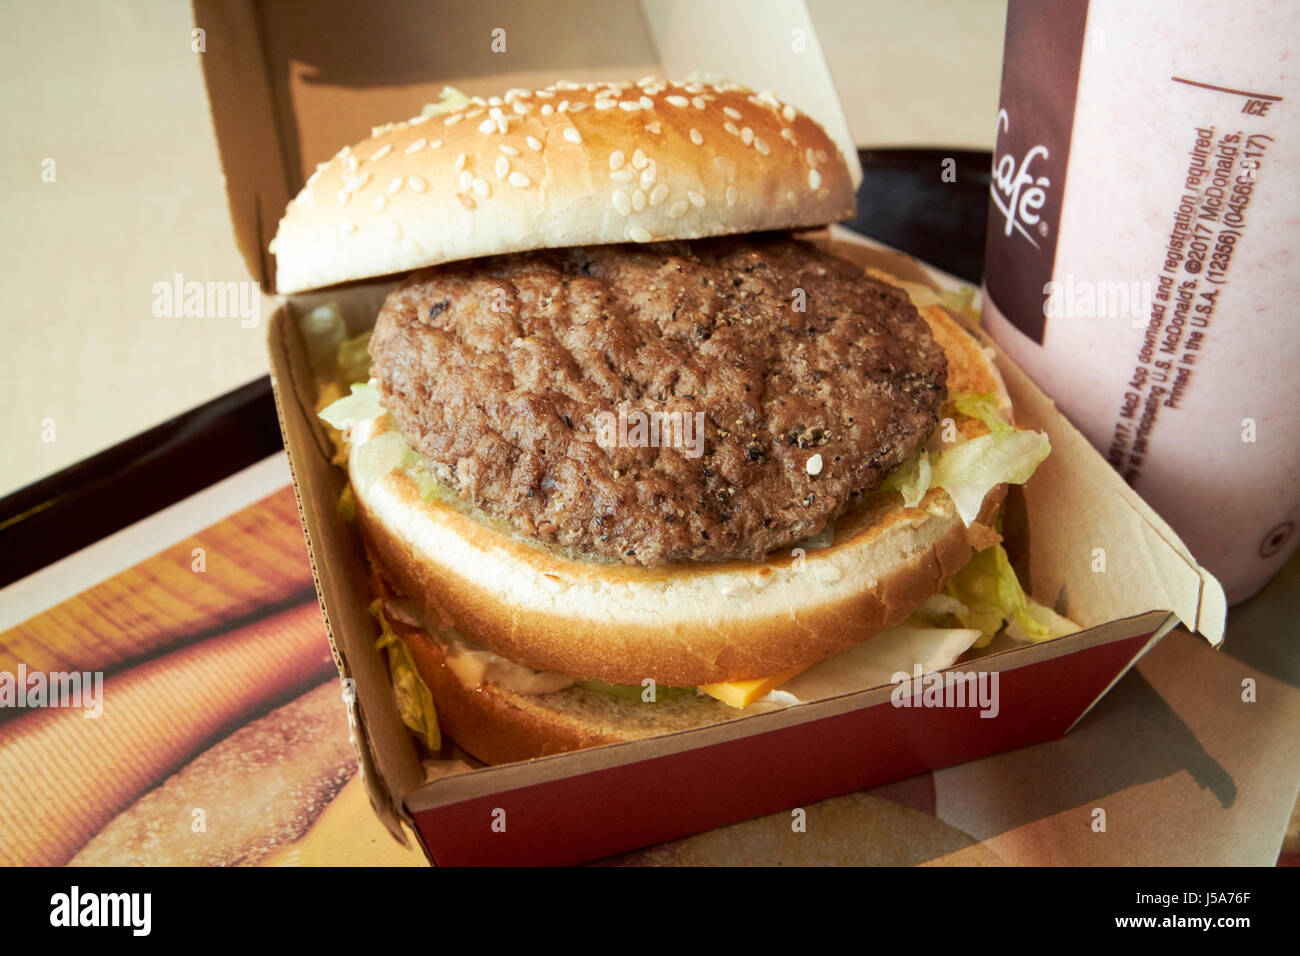 McDonalds big mac burger meat usa Stock Photo